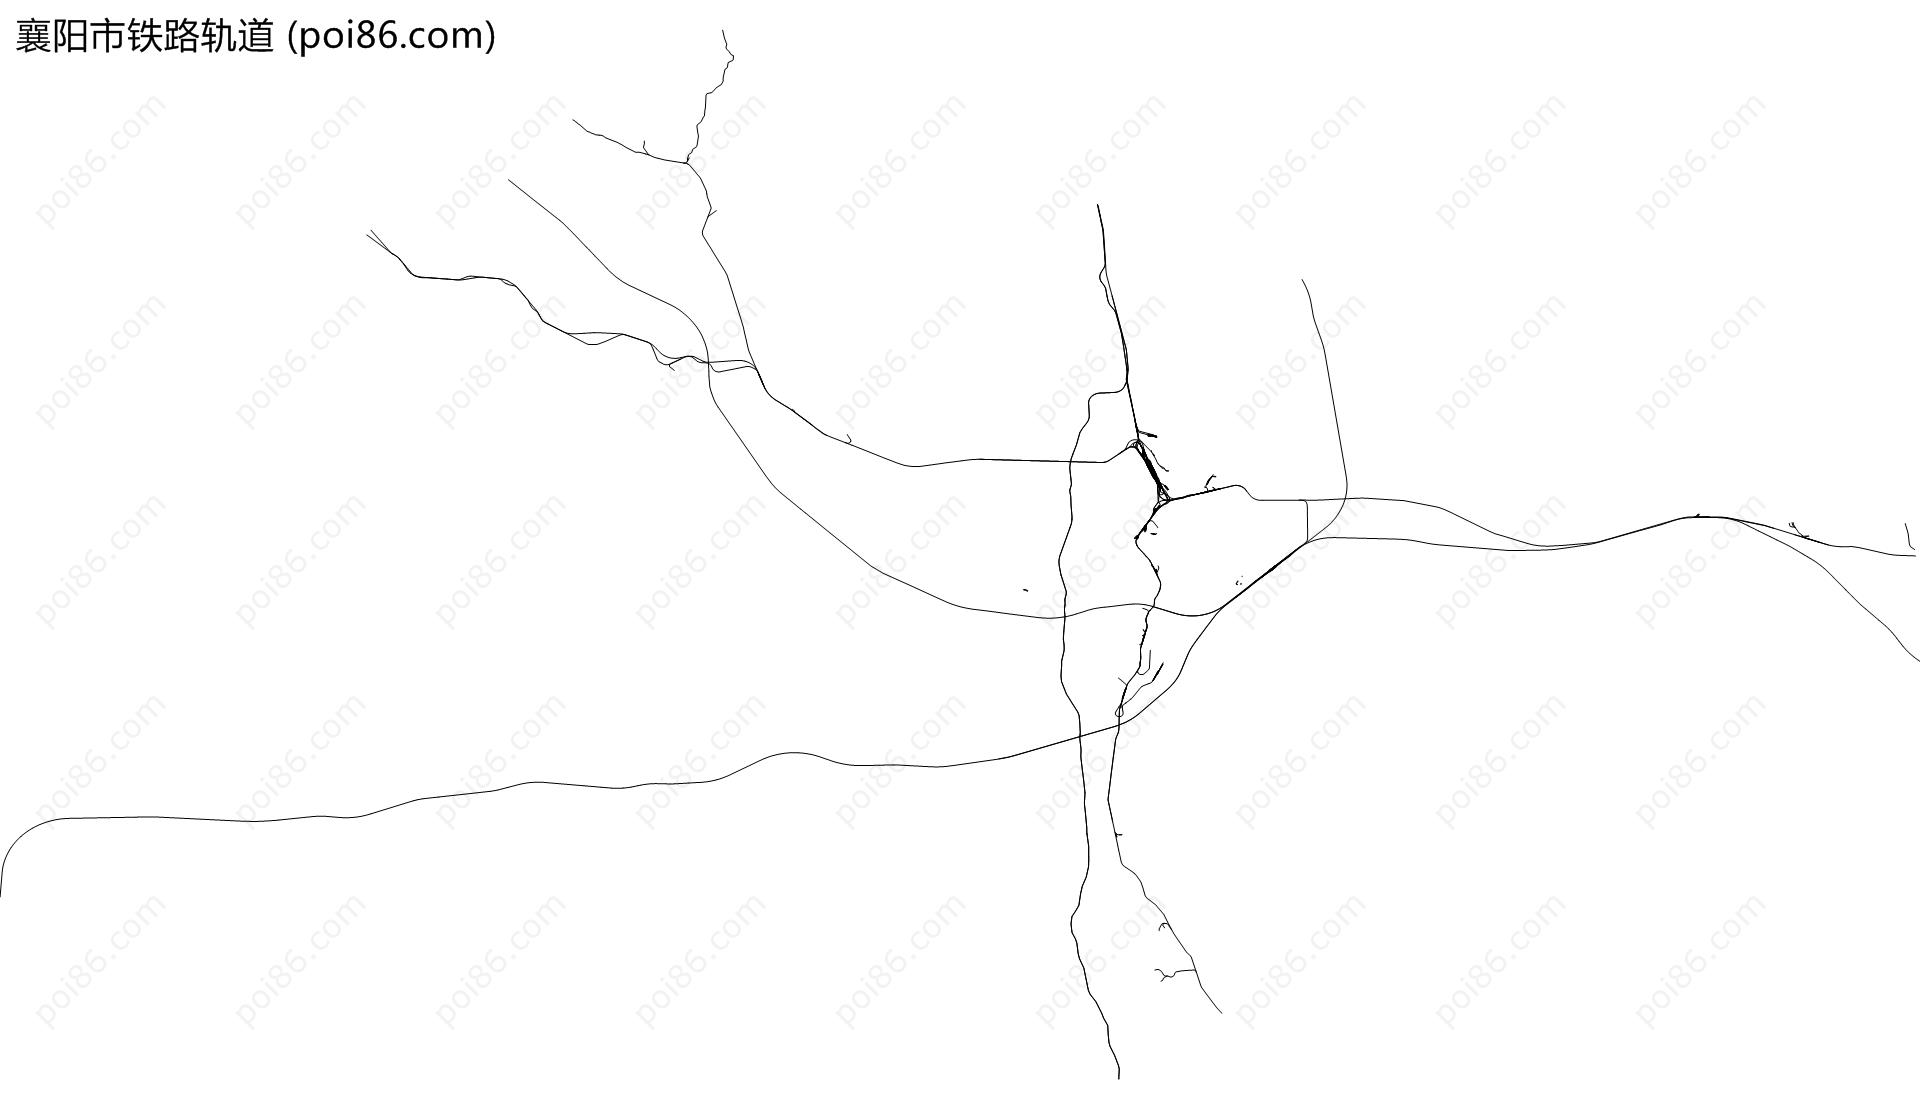 襄阳市铁路轨道地图